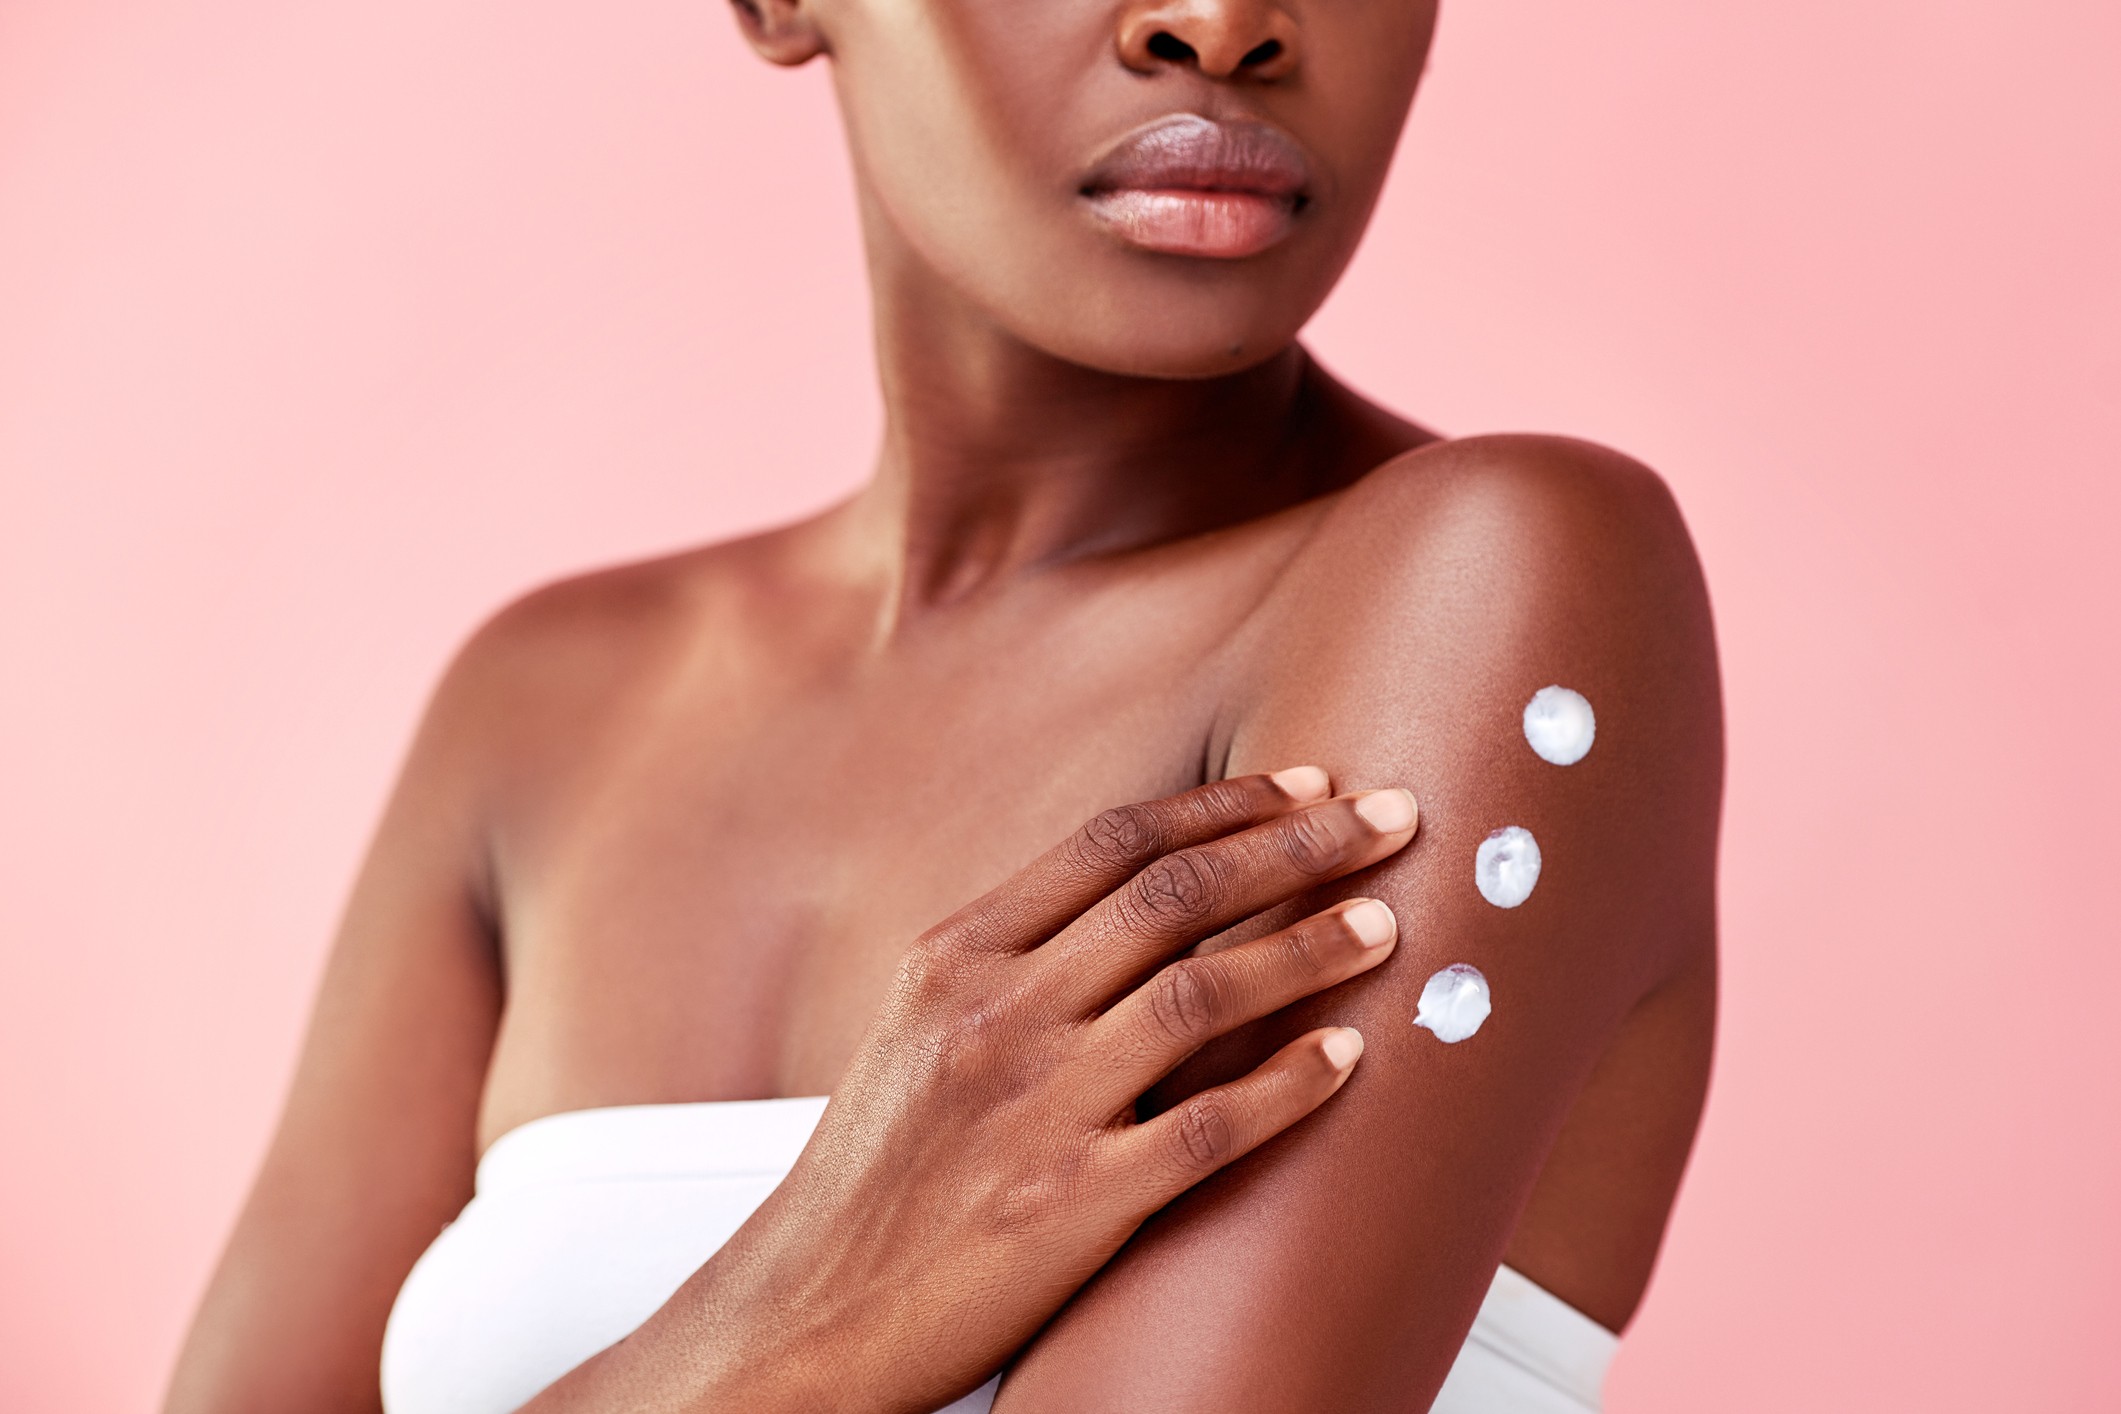 O excesso de perfume nos cosméticos pode ser um fator irritante para pele  (Foto: Getty Images)